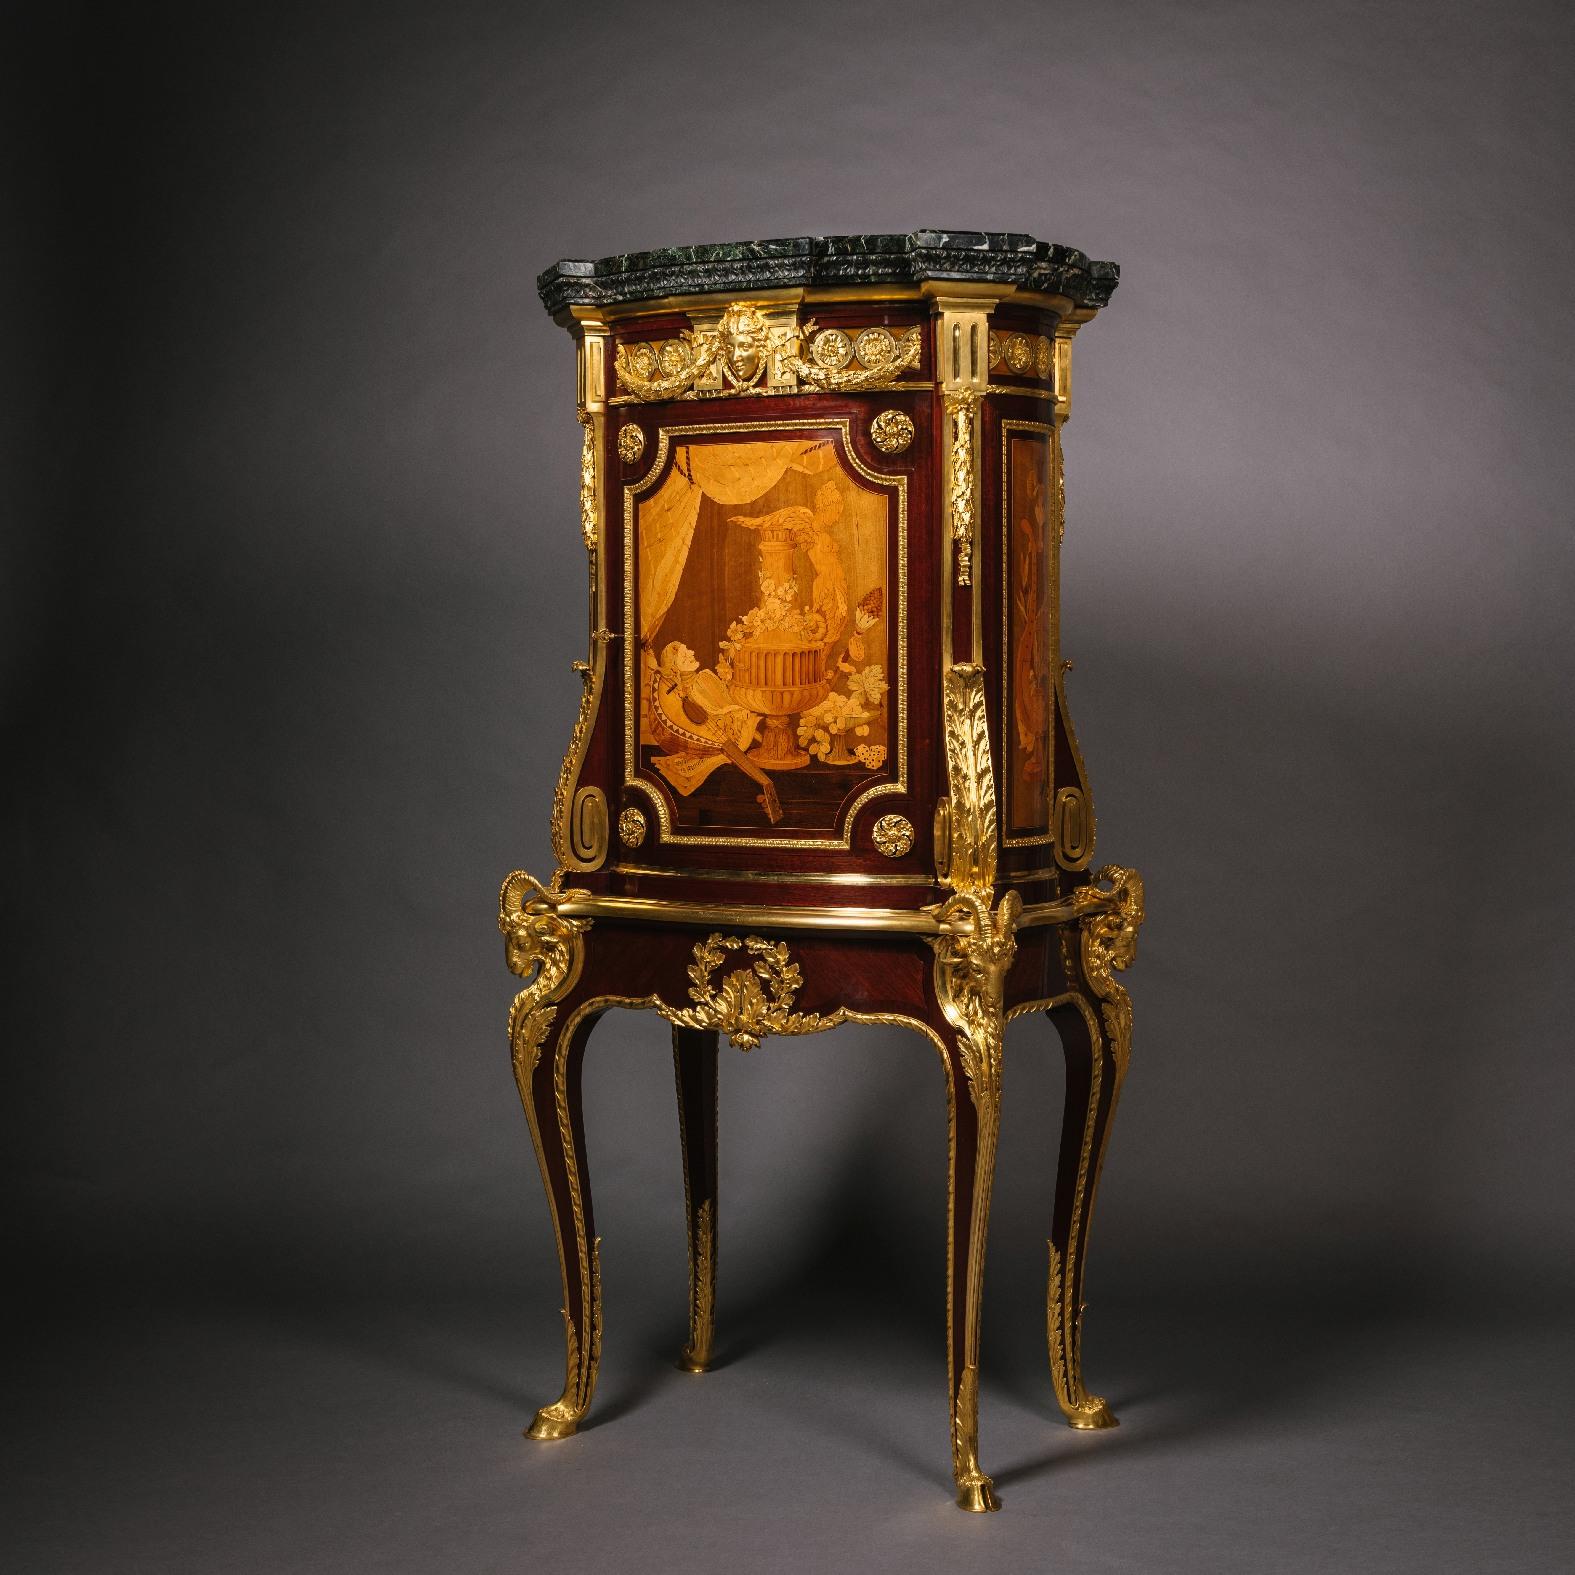 Cabinet en marqueterie monté en bronze doré sur pied d'Emmanuel-Alfred (dit Alfred II) Beurdeley

De forme elliptique, ce rare meuble est conçu pour être regardé en rond. Pièce d'exposition, elle illustre les capacités exceptionnelles dans l'art de